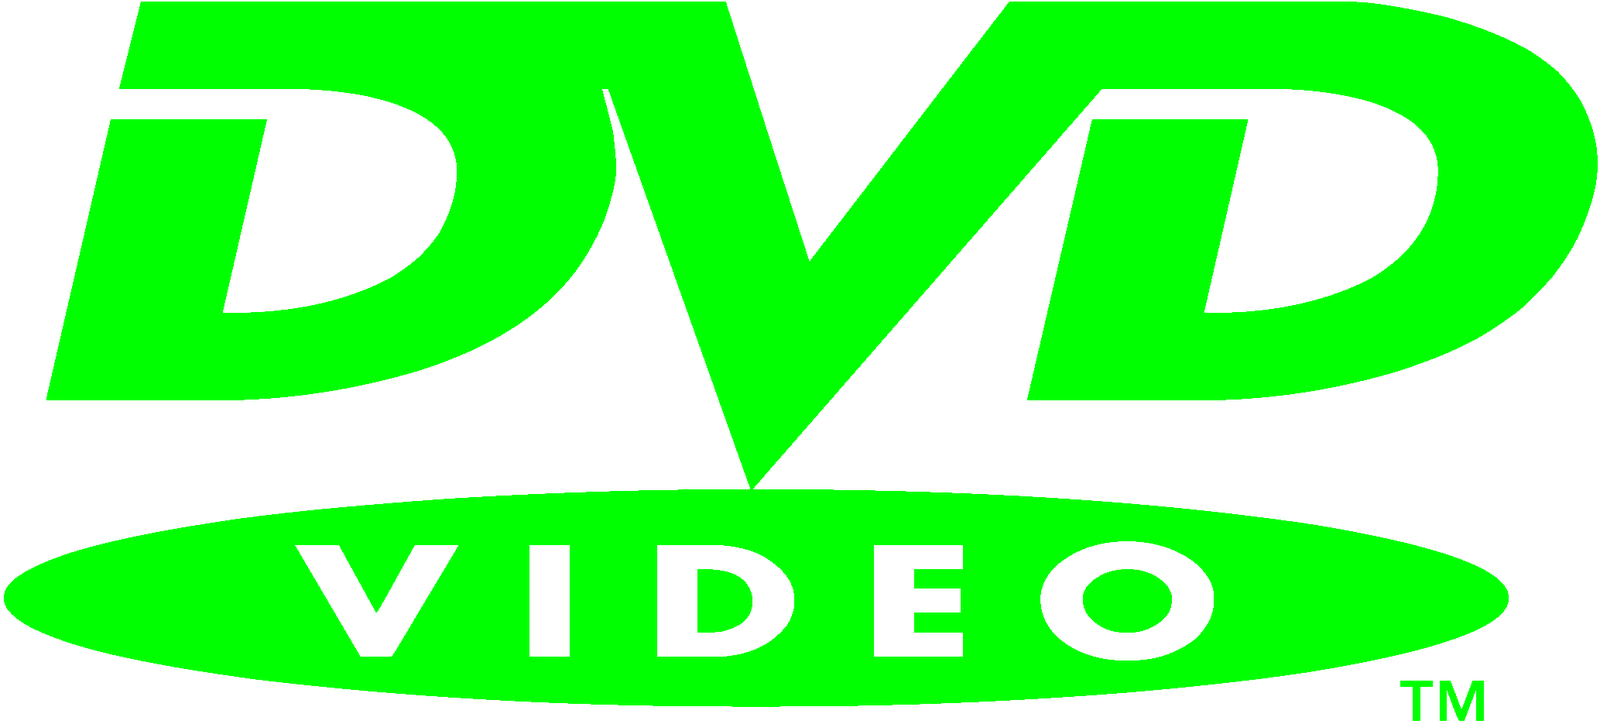 Green DVD Logo - Dvd logos clipart - Clipart Collection | Hd dvd logo.gif; phantom ...